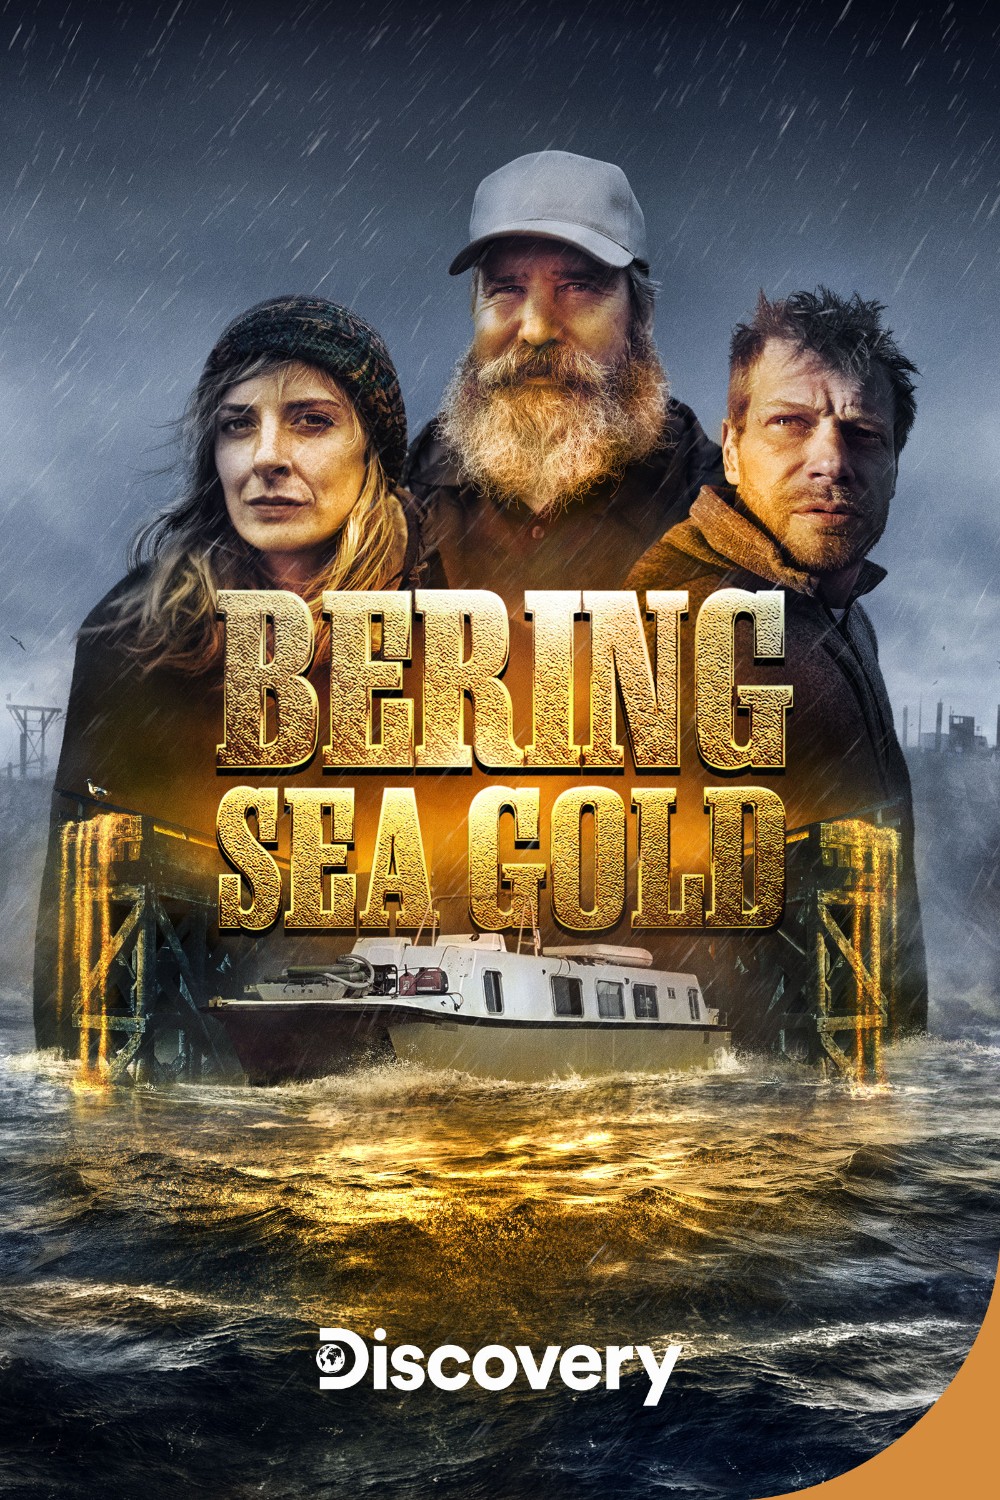 Bering Sea Gold S17E10 | En [1080p] (x265) 33fc14da0f5433ec22b7d64b4c8fe514